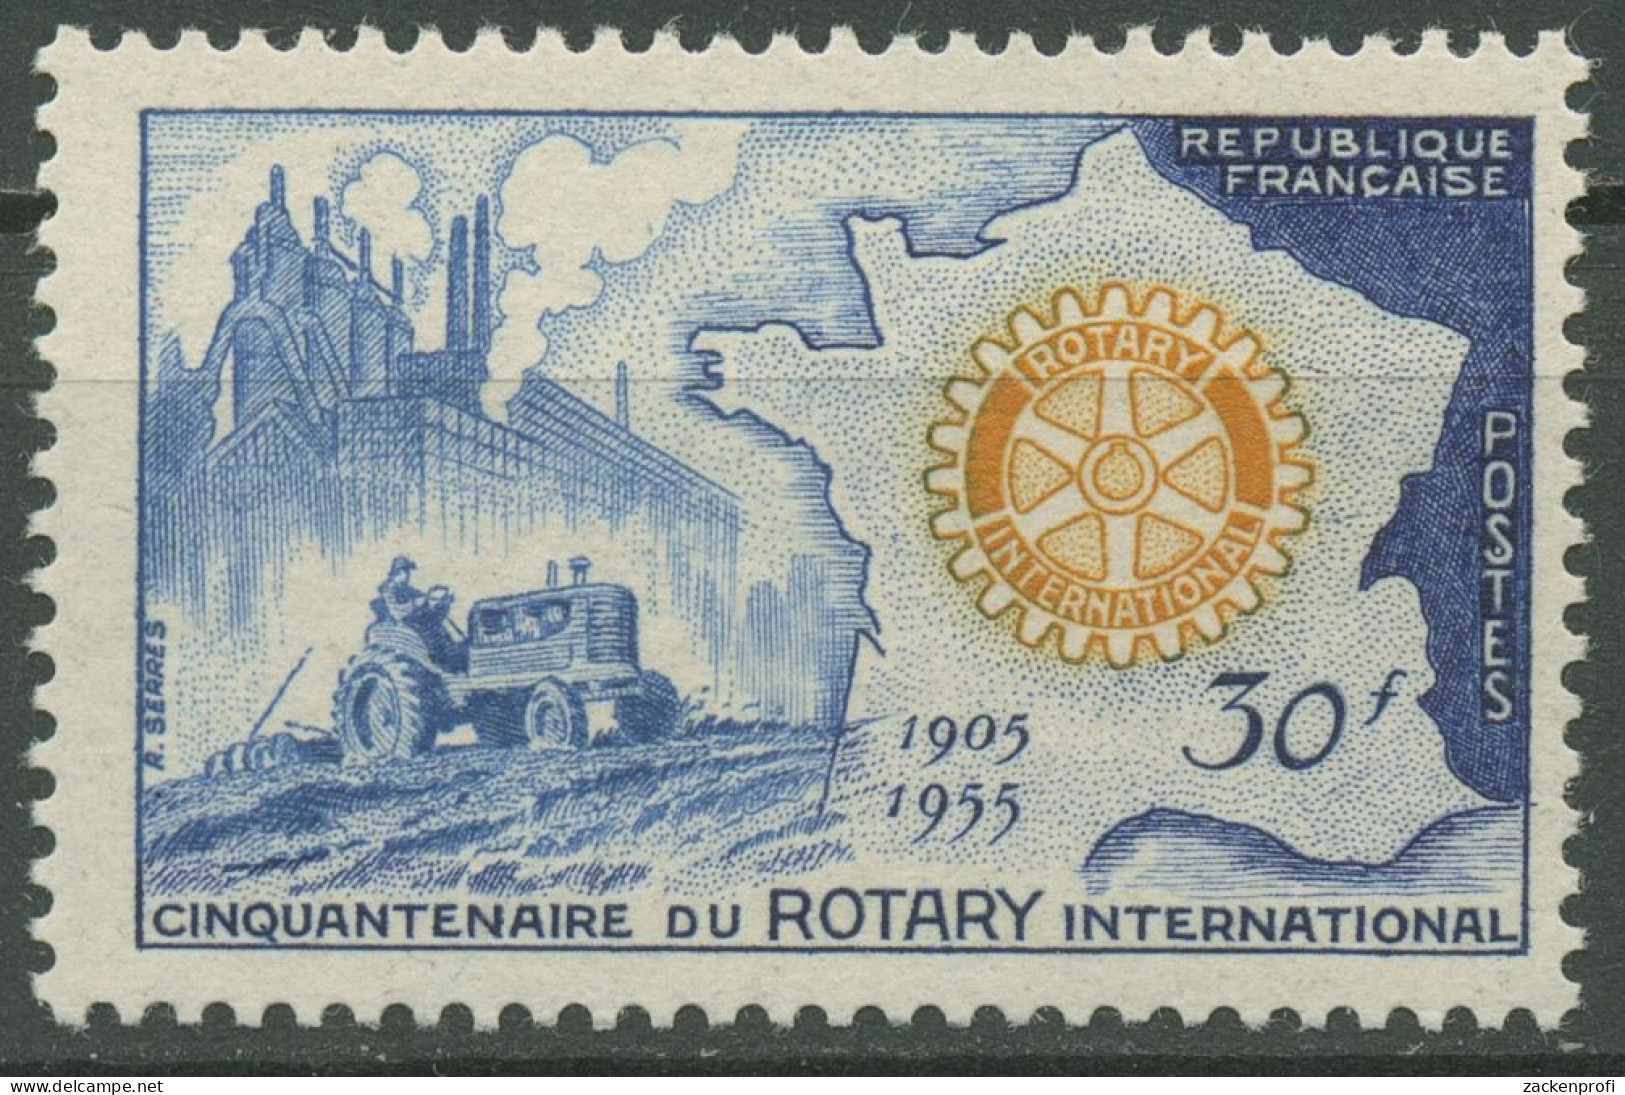 Frankreich 1955 Rotary International Traktor Landkarte 1035 Postfrisch - Neufs